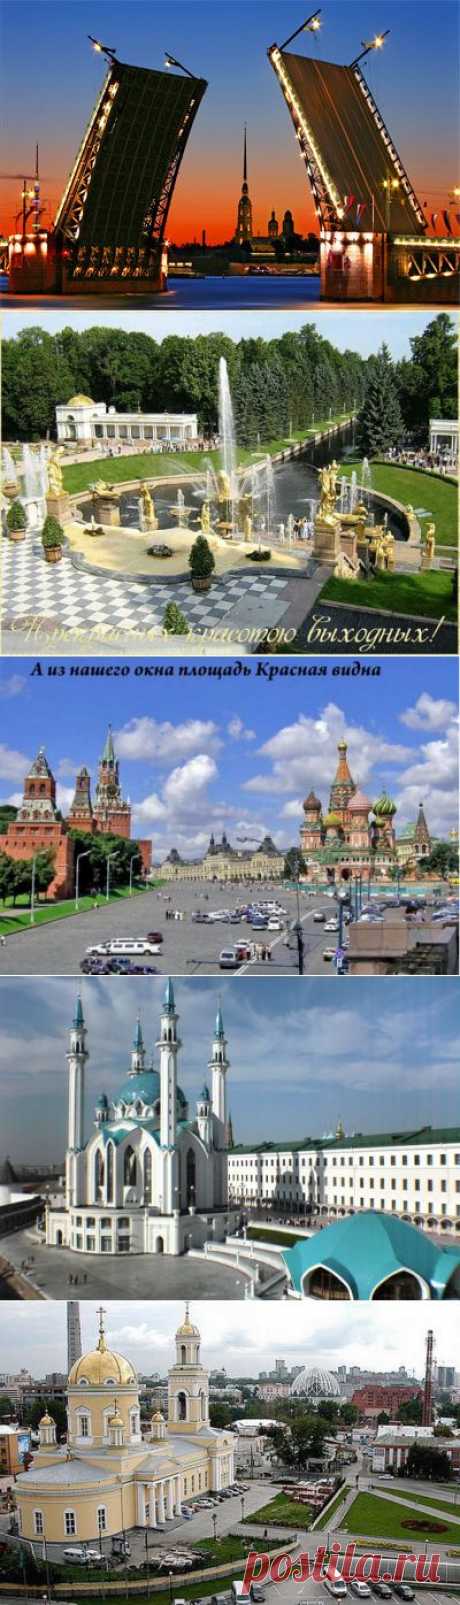 Самые красивые места России - 10 самых красивых городов России.